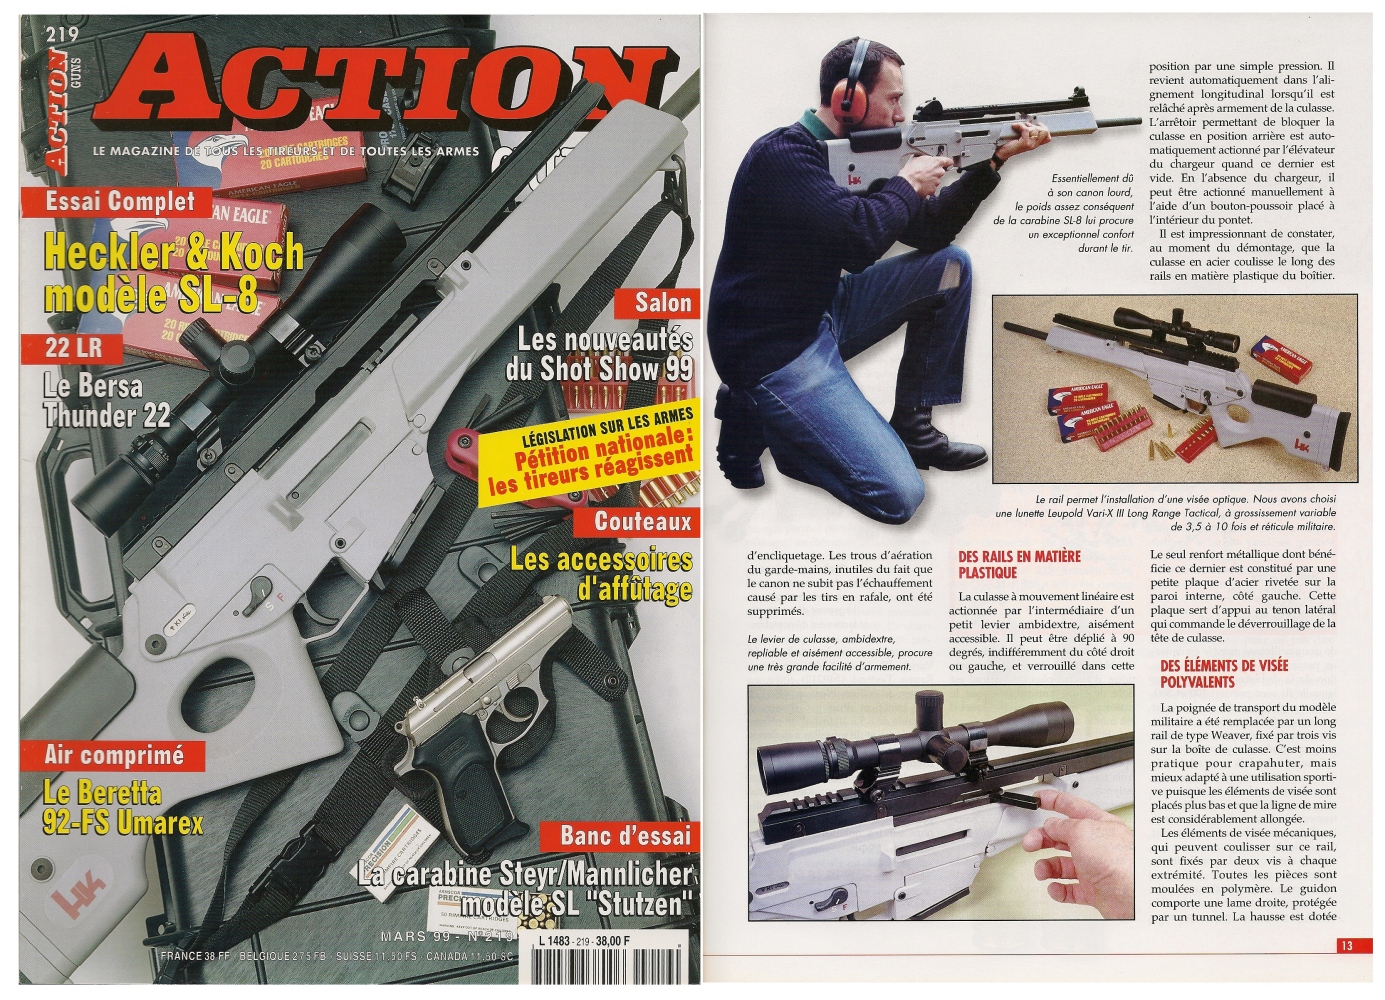 Le banc d’essai du Heckler & Koch modèle SL-8 en calibre .223 Remington a été publié sur 8 pages dans le magazine Action Guns n°219 (mars 1999)